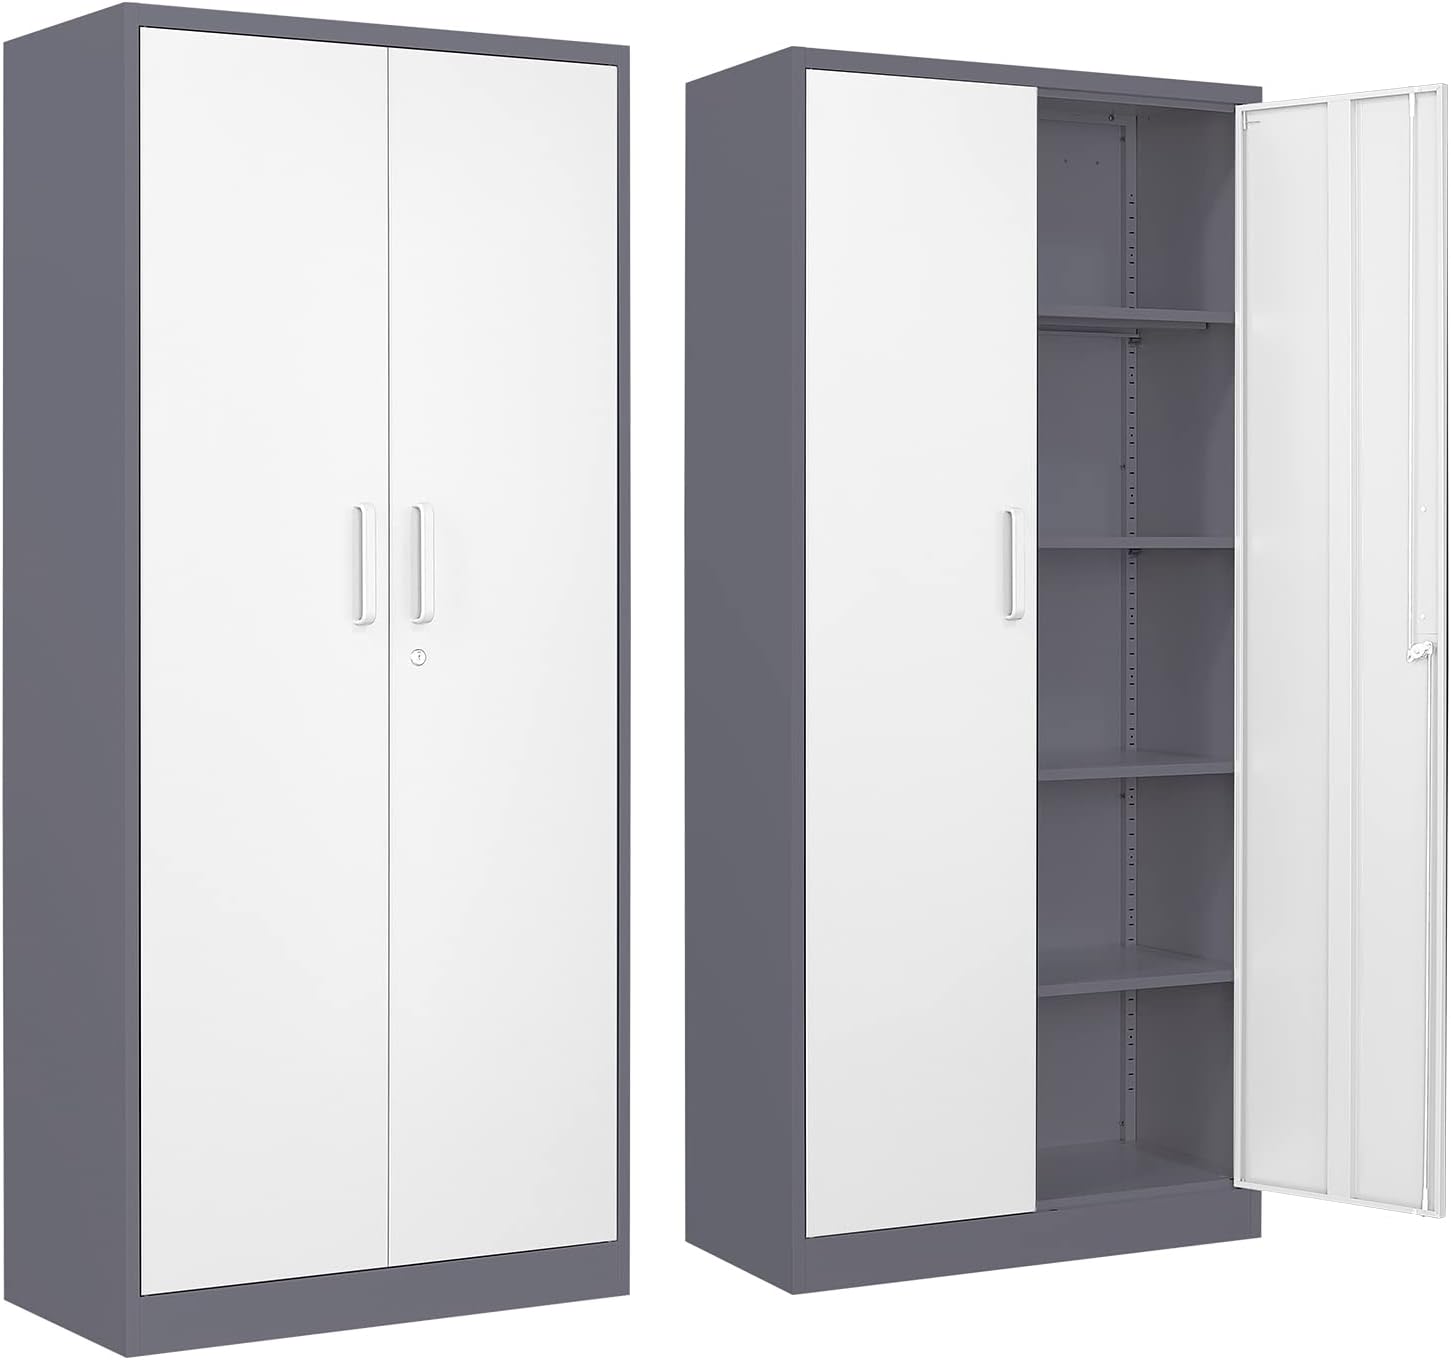 Yizosh Metal Garage Storage Cabinet